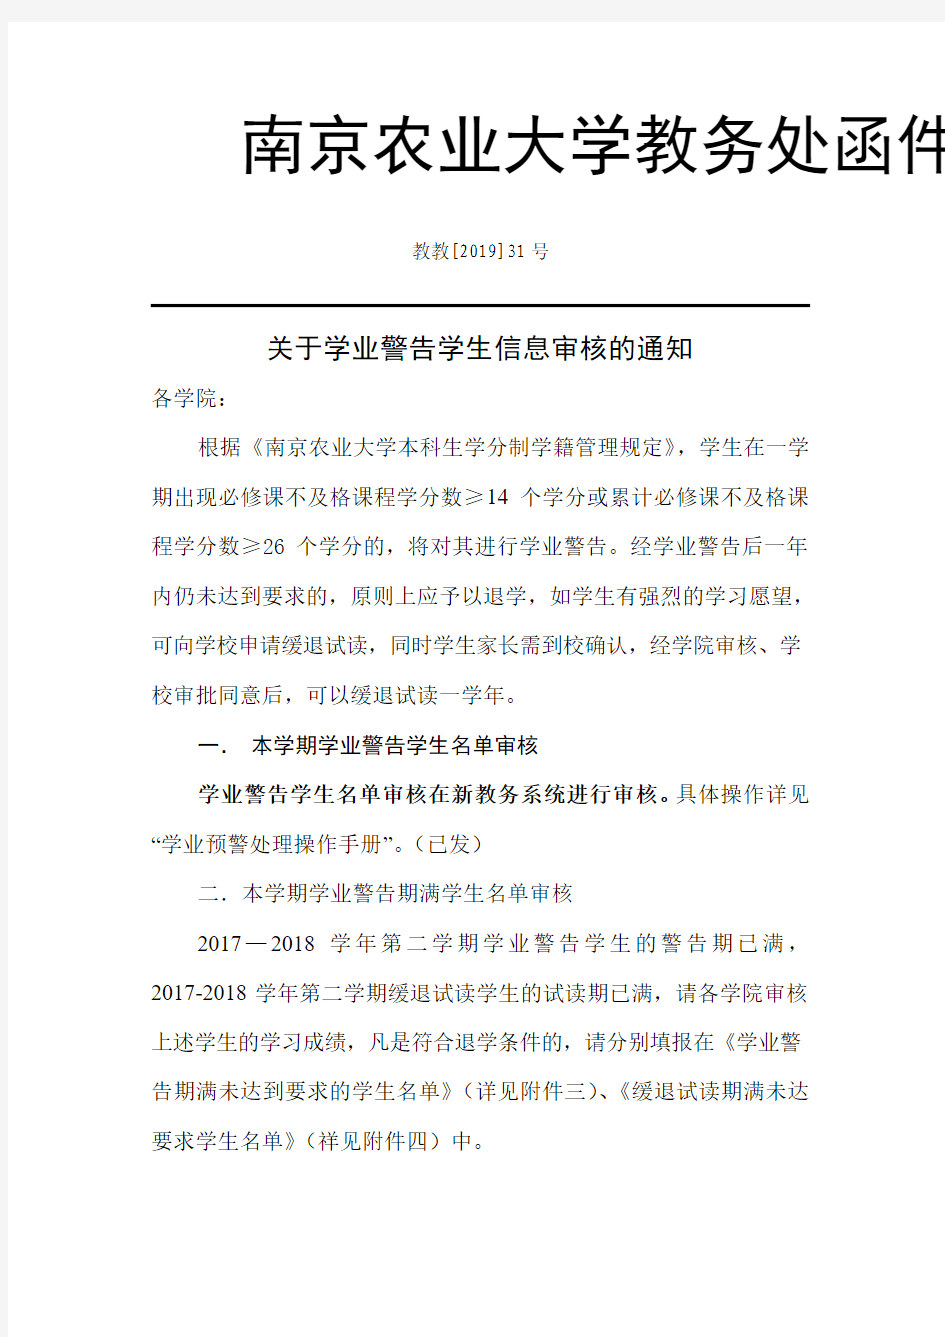 南京农业大学教务处函件